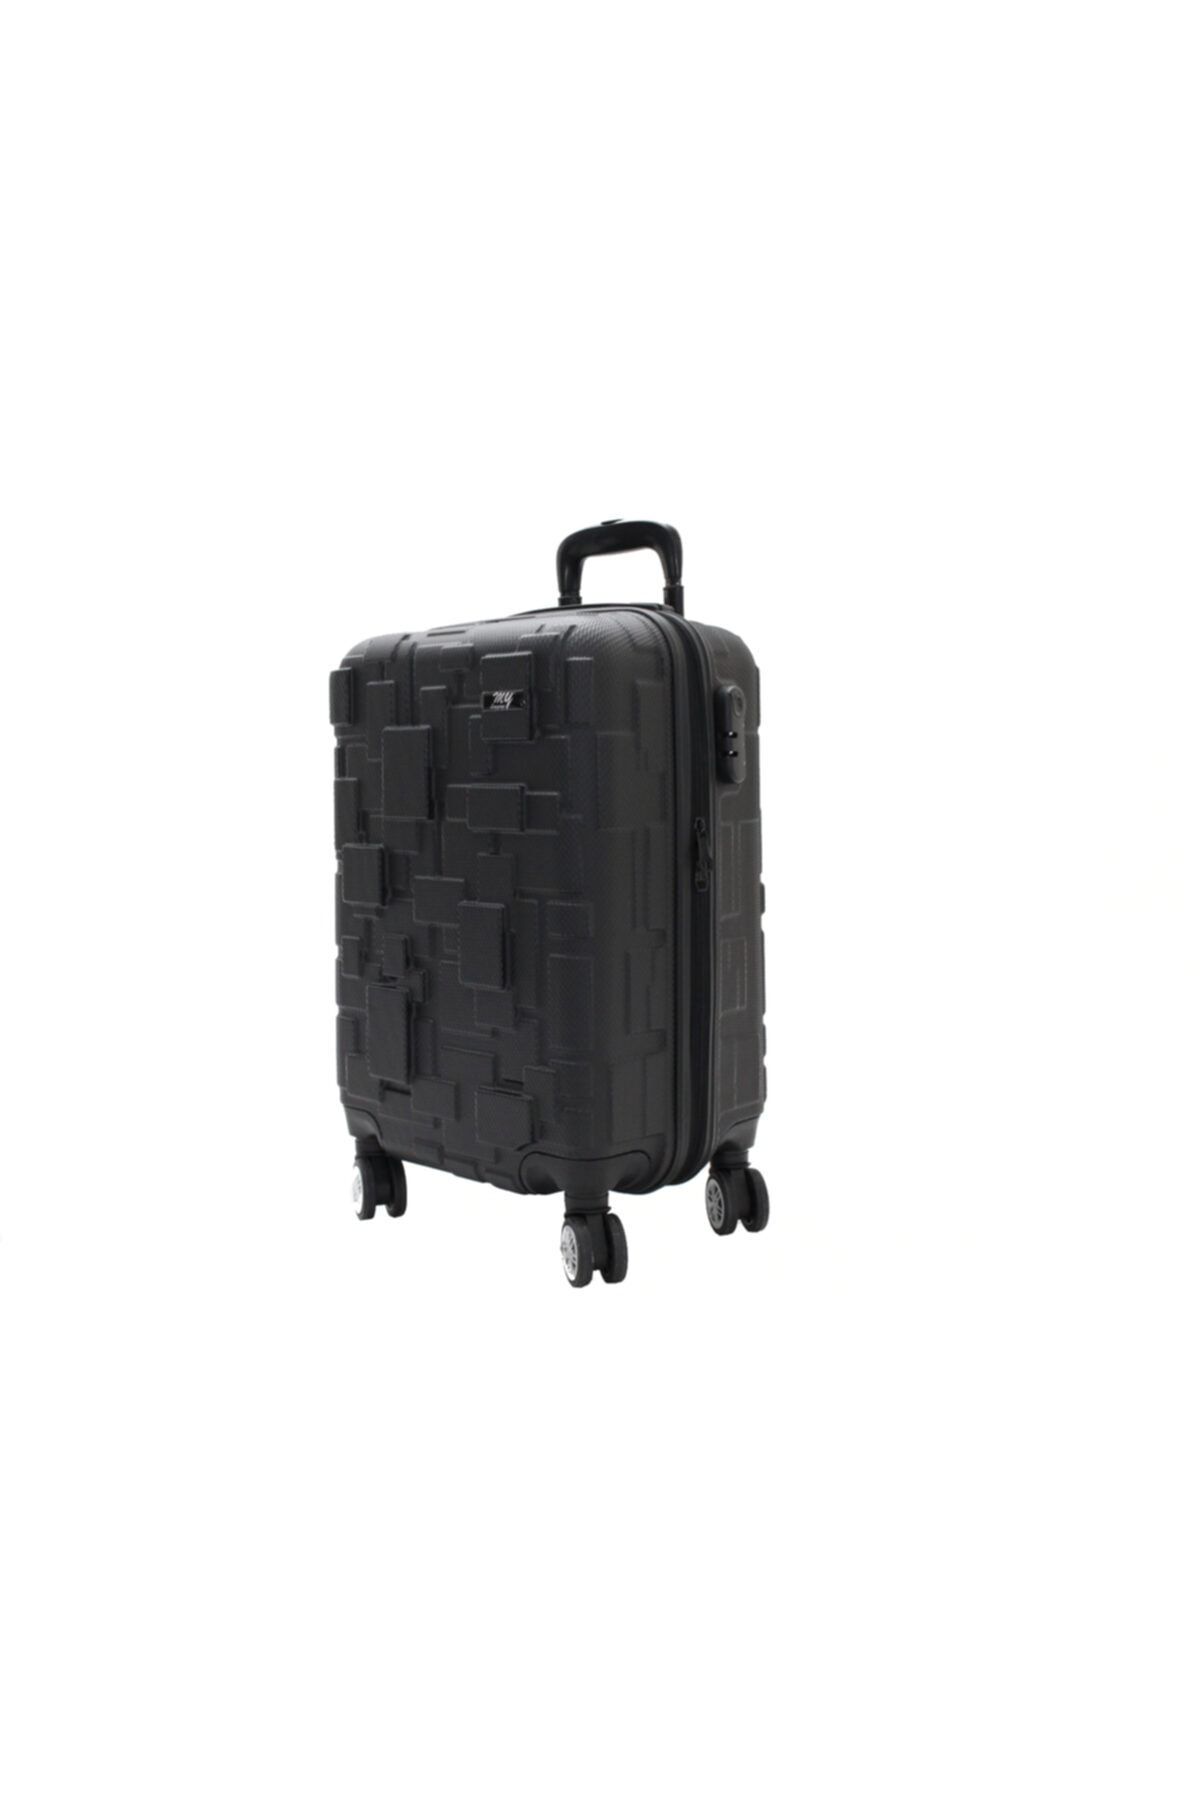 MY SARACİYE My Luggage Valiz Bakalit Kabin Boy Valiz, Bavul 10136-3